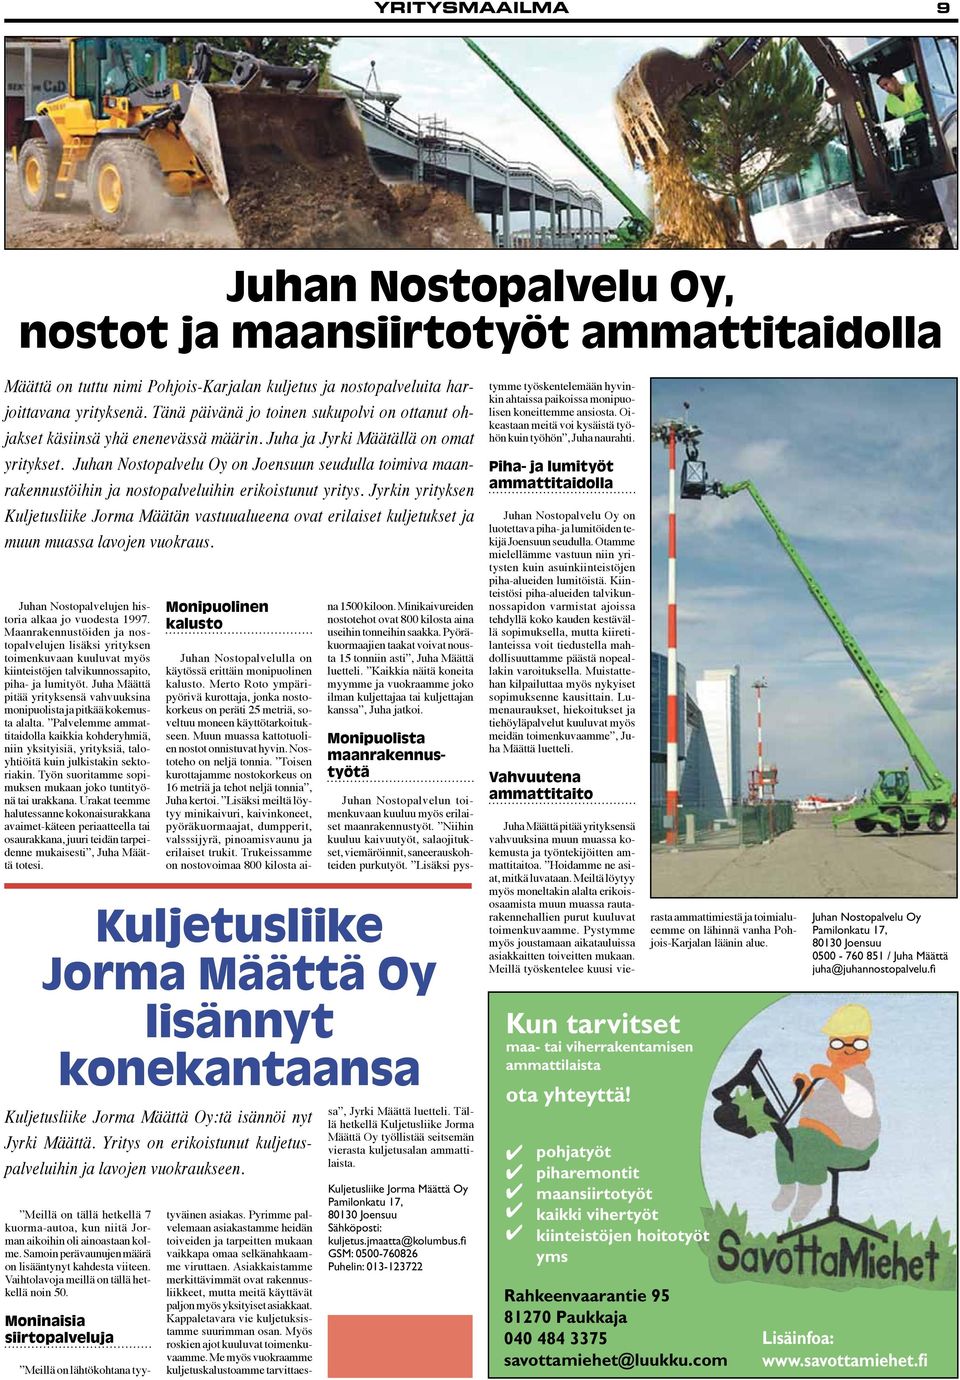 Juhan Nostopalvelu Oy on Joensuun seudulla toimiva maanrakennustöihin ja nostopalveluihin erikoistunut yritys.